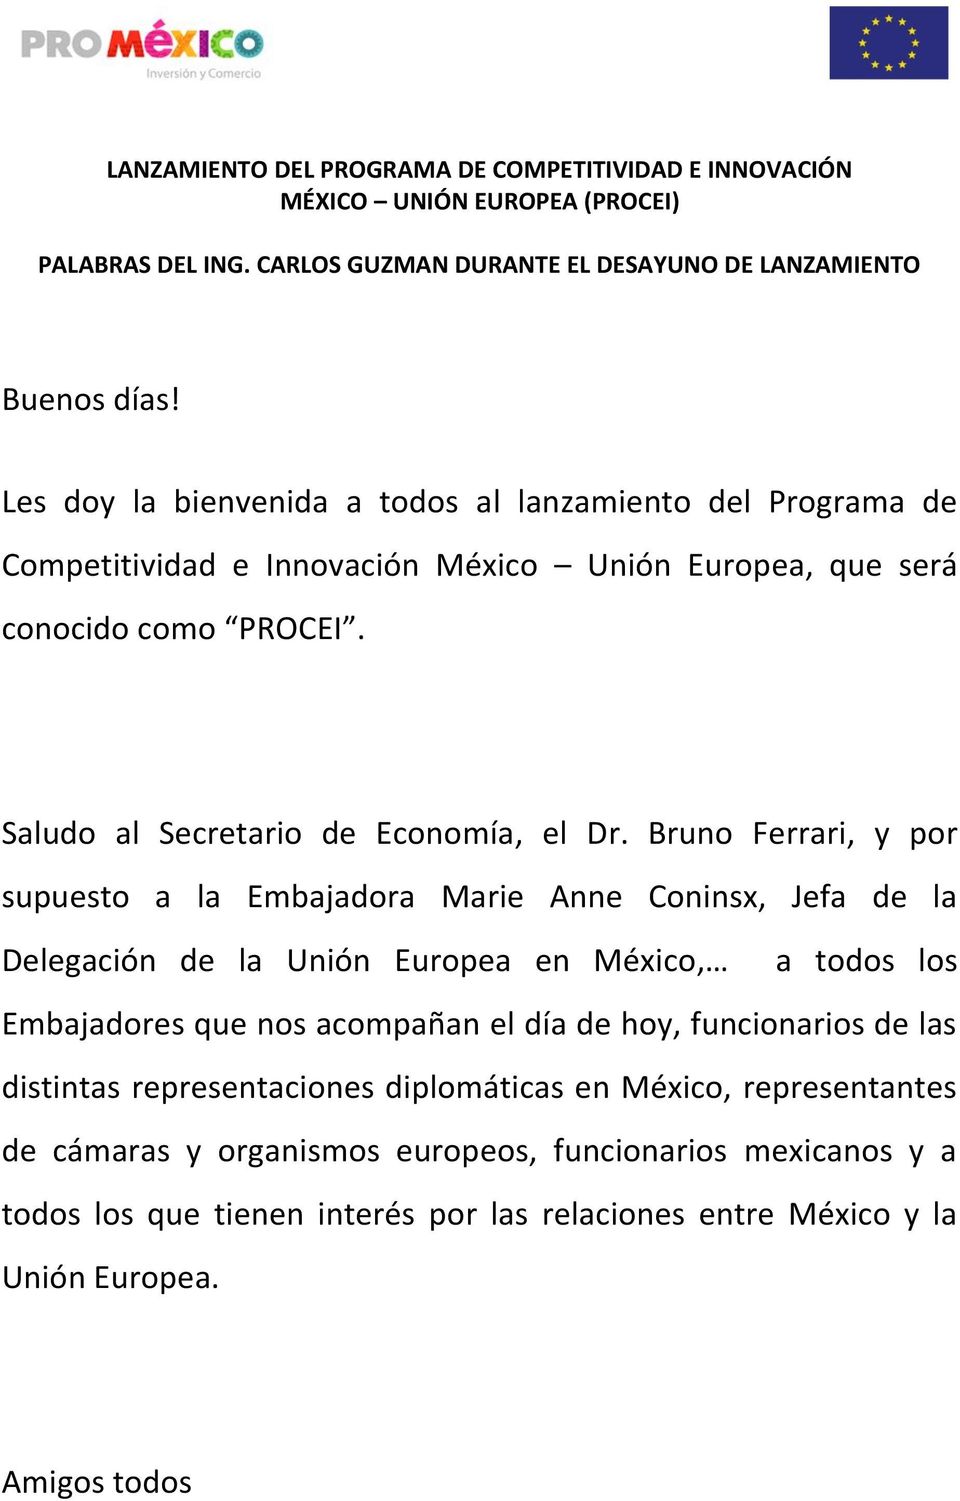 Bruno Ferrari, y por supuesto a la Embajadora Marie Anne Coninsx, Jefa de la Delegación de la Unión Europea en México, a todos los Embajadores que nos acompañan el día de hoy, funcionarios de